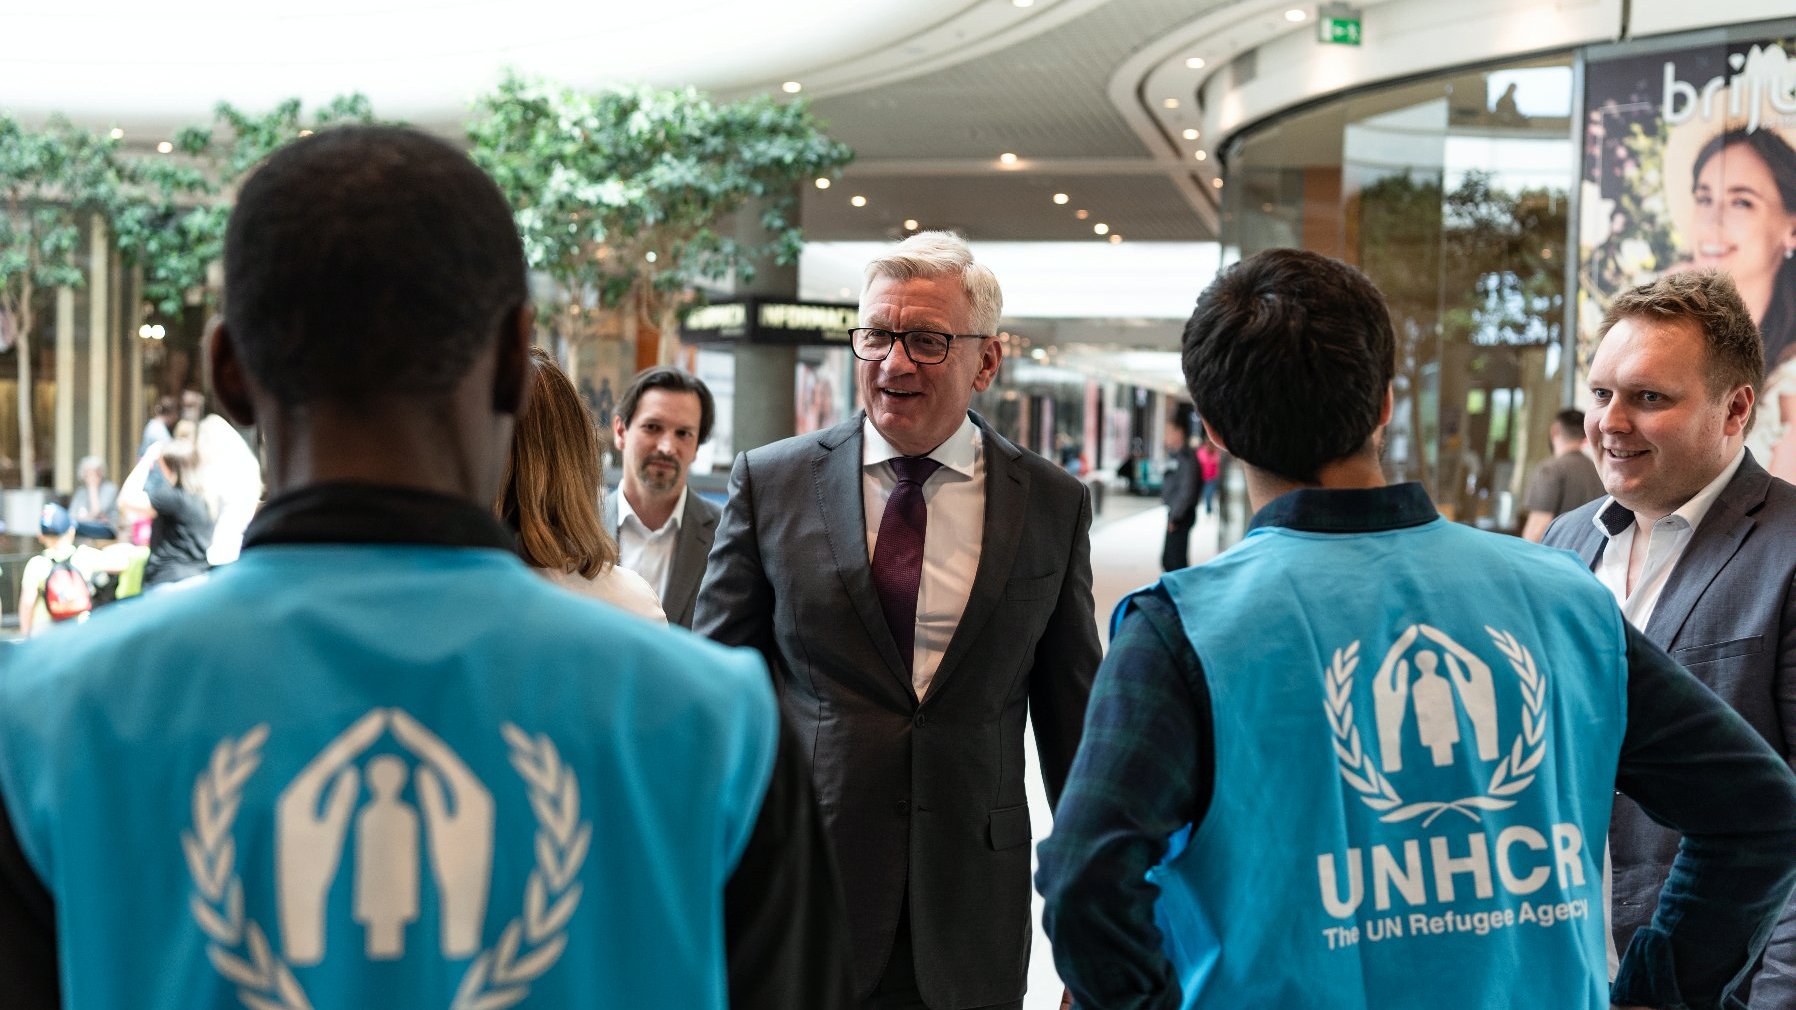 Na zdjęciu Jacek Jaśkowiak, prezydent Poznania, rozmawiający z pracownikami UNHCR, stojącymi tyłem do obiektywu